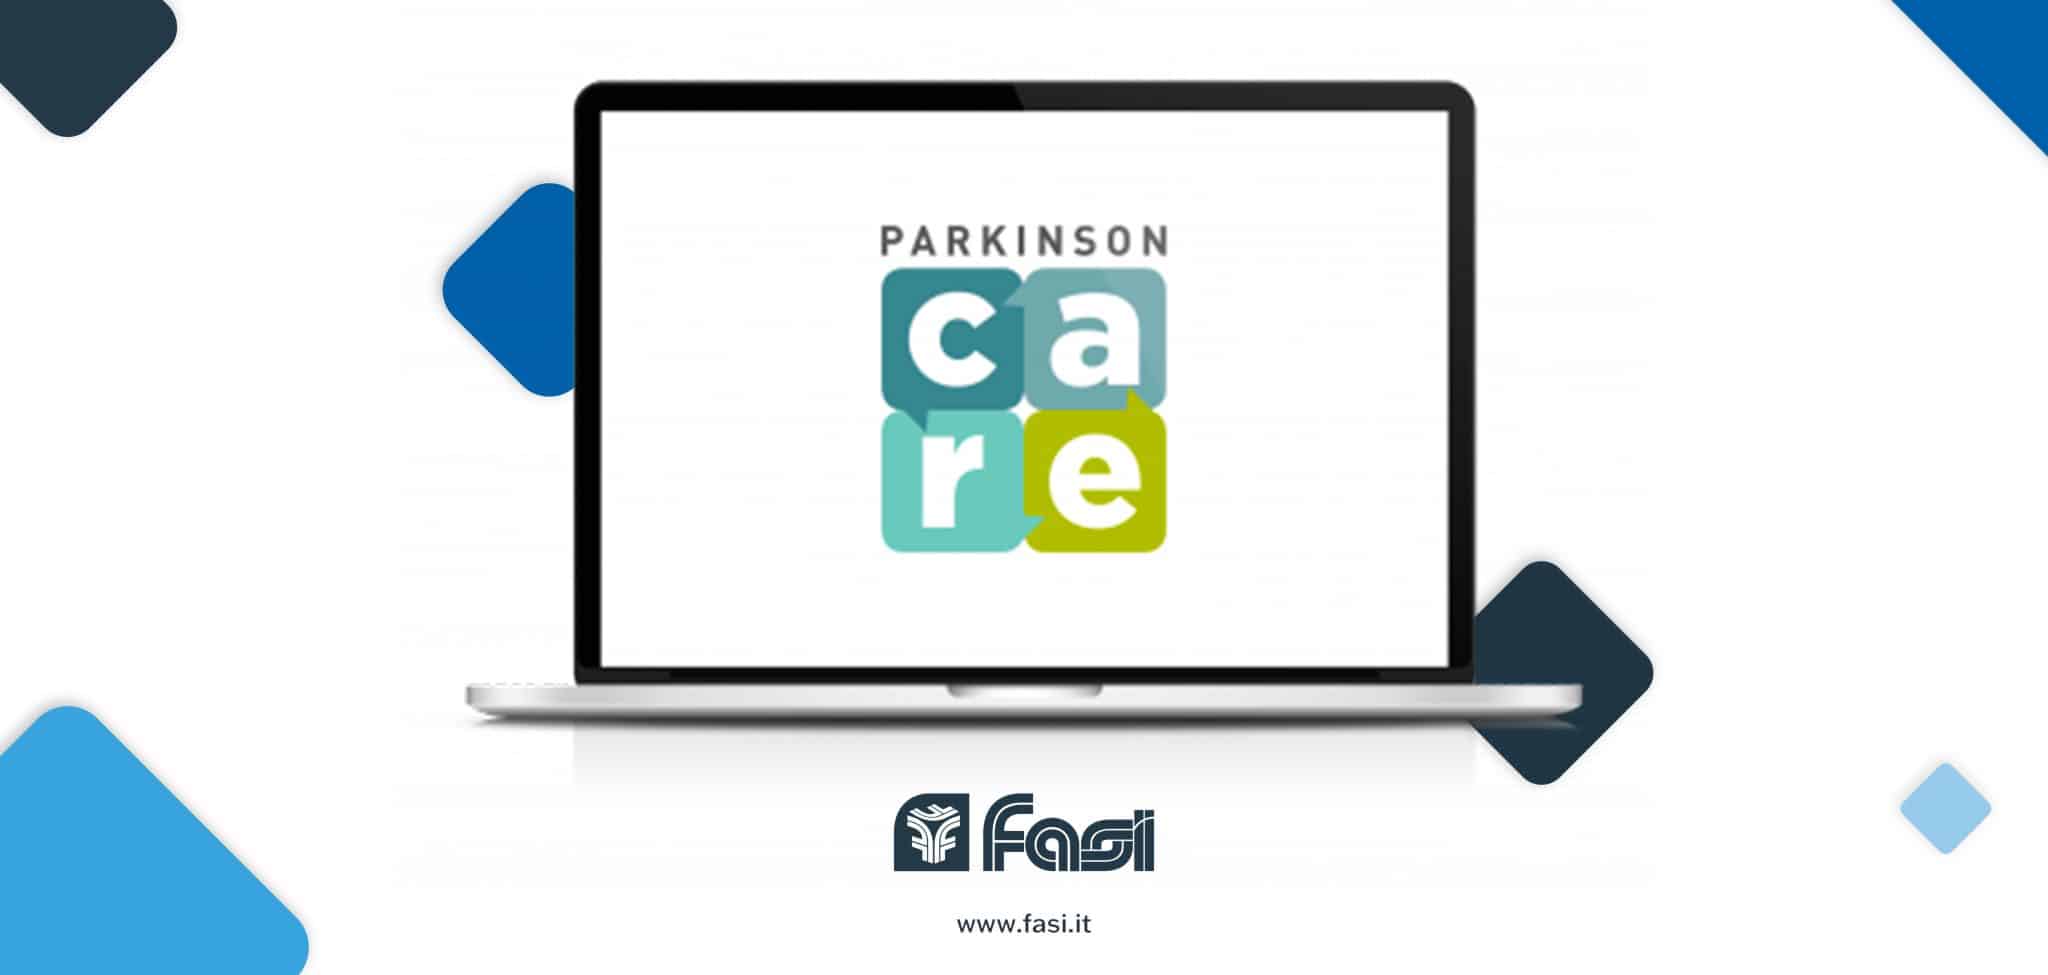 Parkinson Care: il servizio di teleassistenza del Fasi che migliora la vita dei pazienti e delle loro famiglie